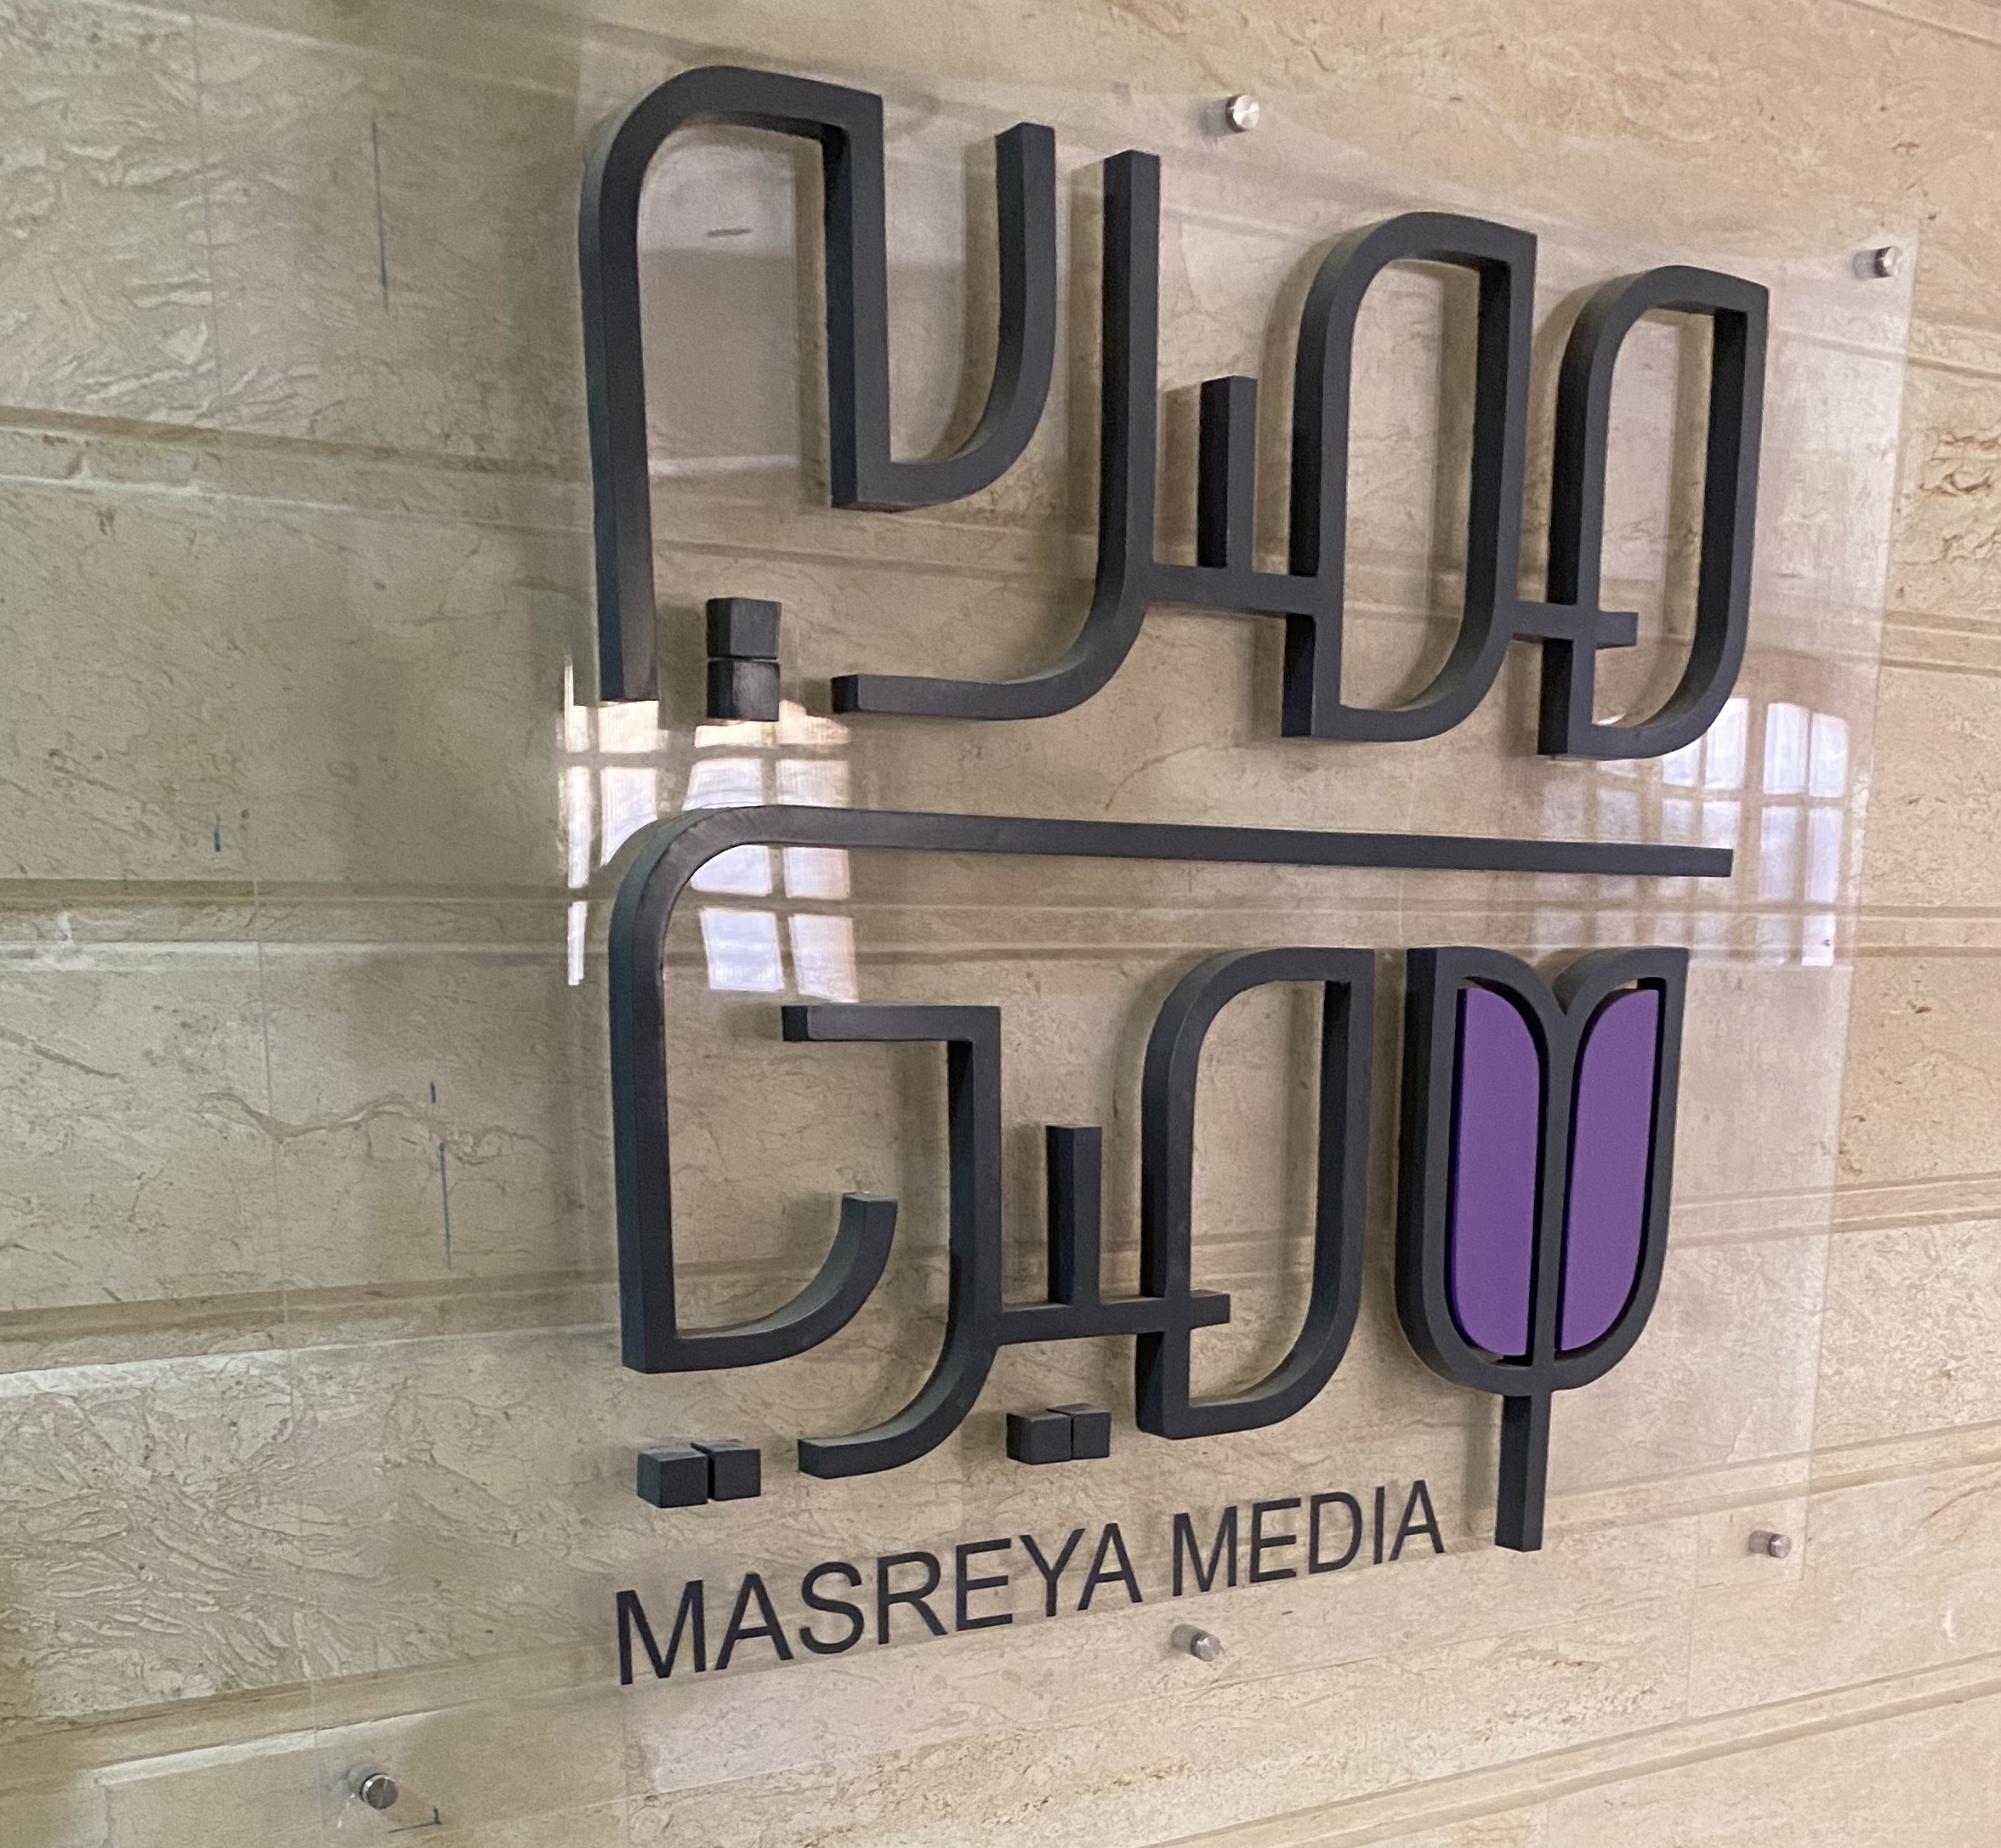 Masreya Media Co.